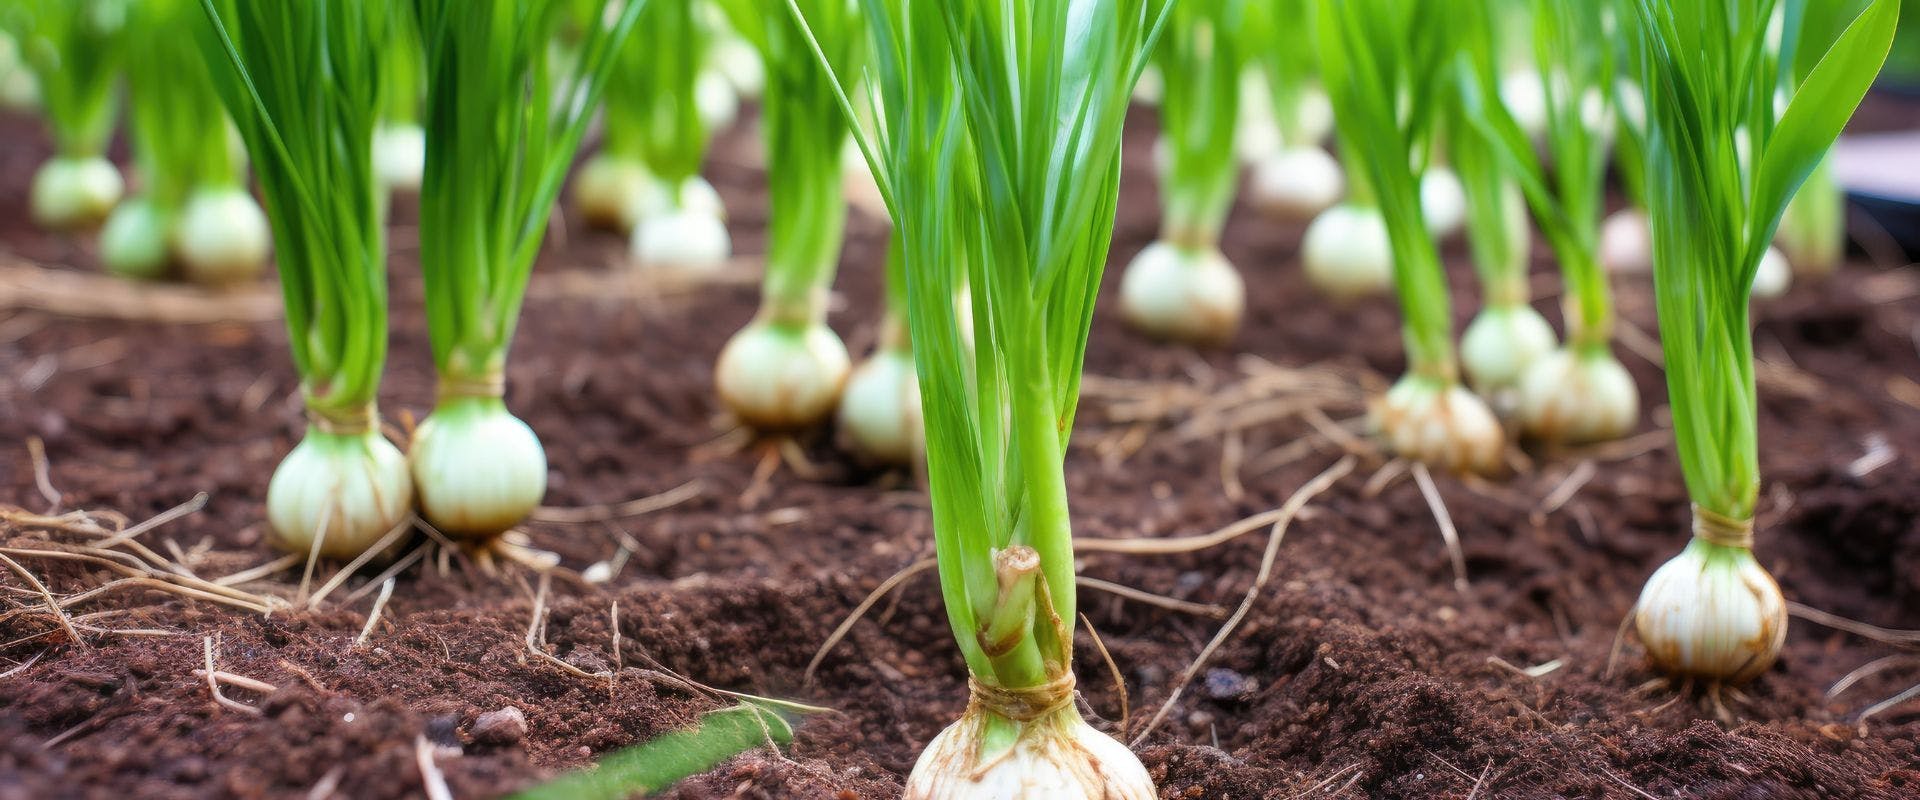 Garlic growing in a field